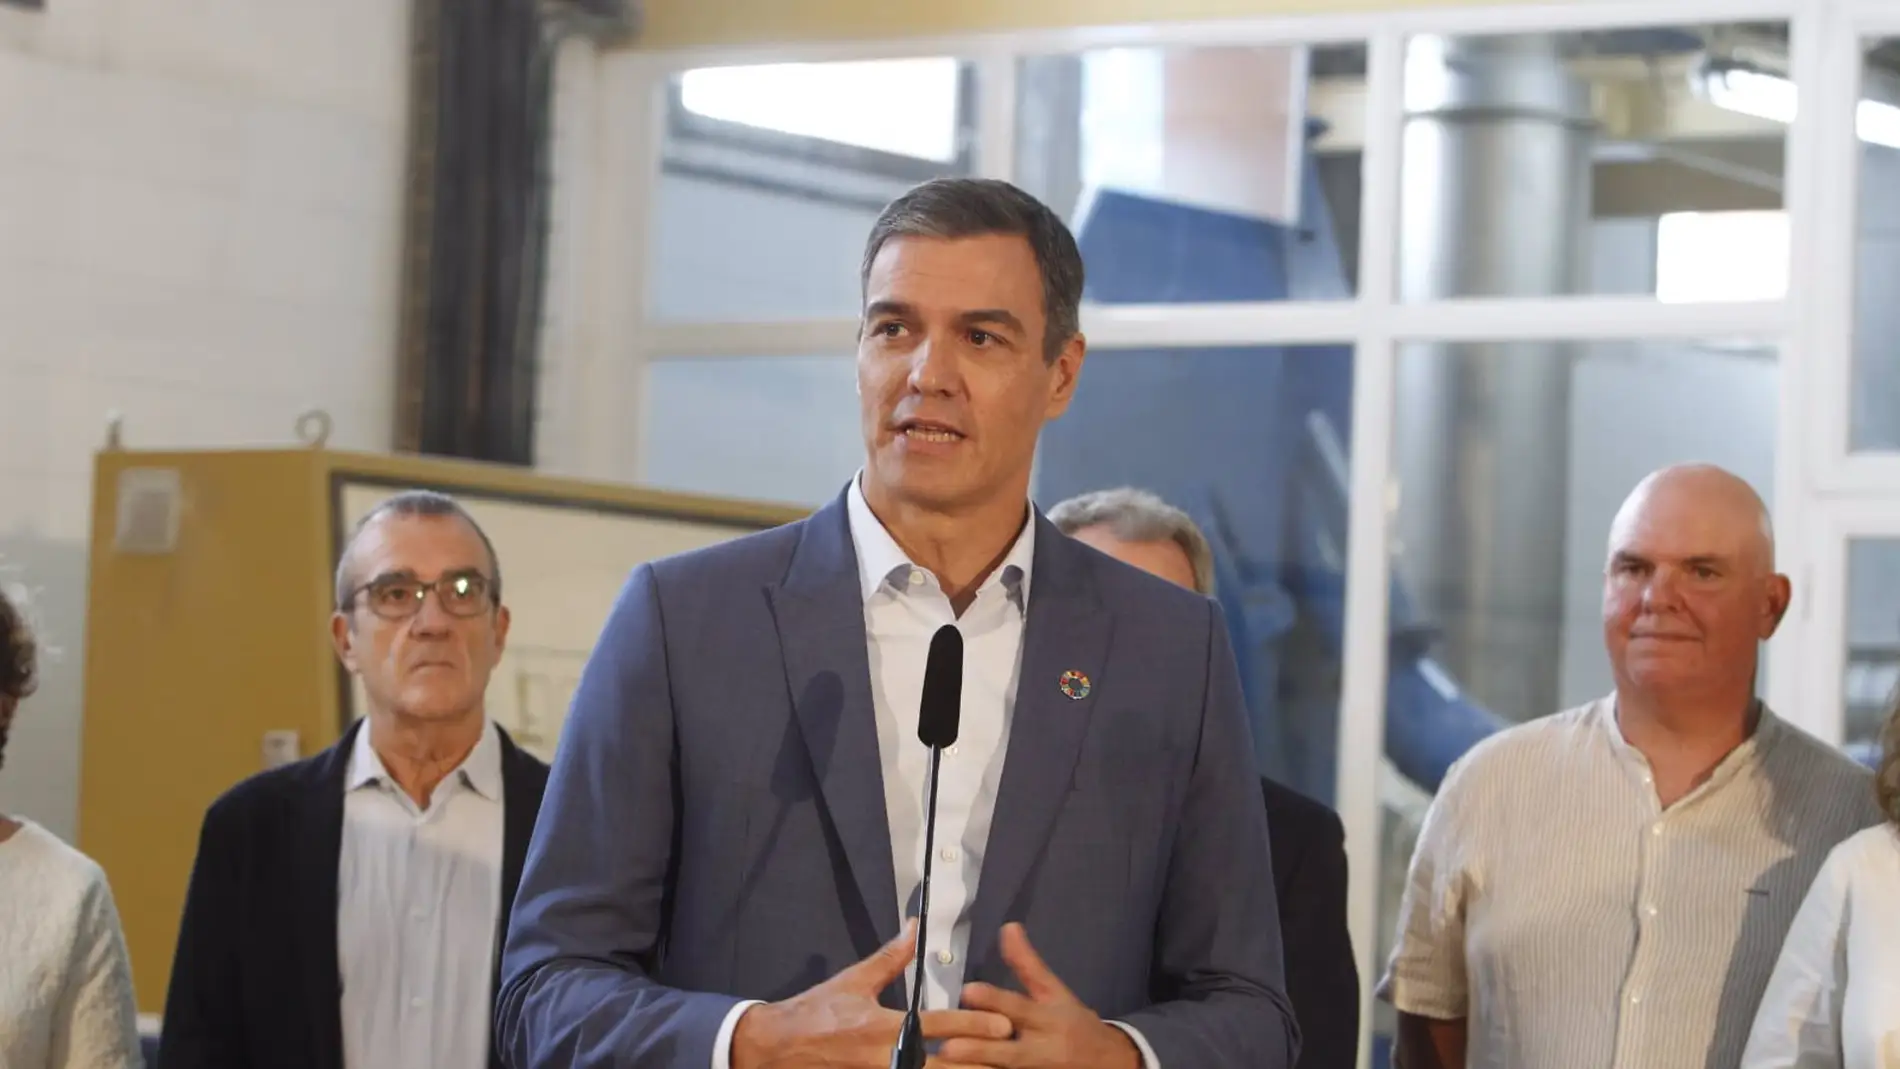 El presidente del Gobierno, Pedro Sánchez, anuncia en Mallorca la aprobación de la parte fiscal del REB